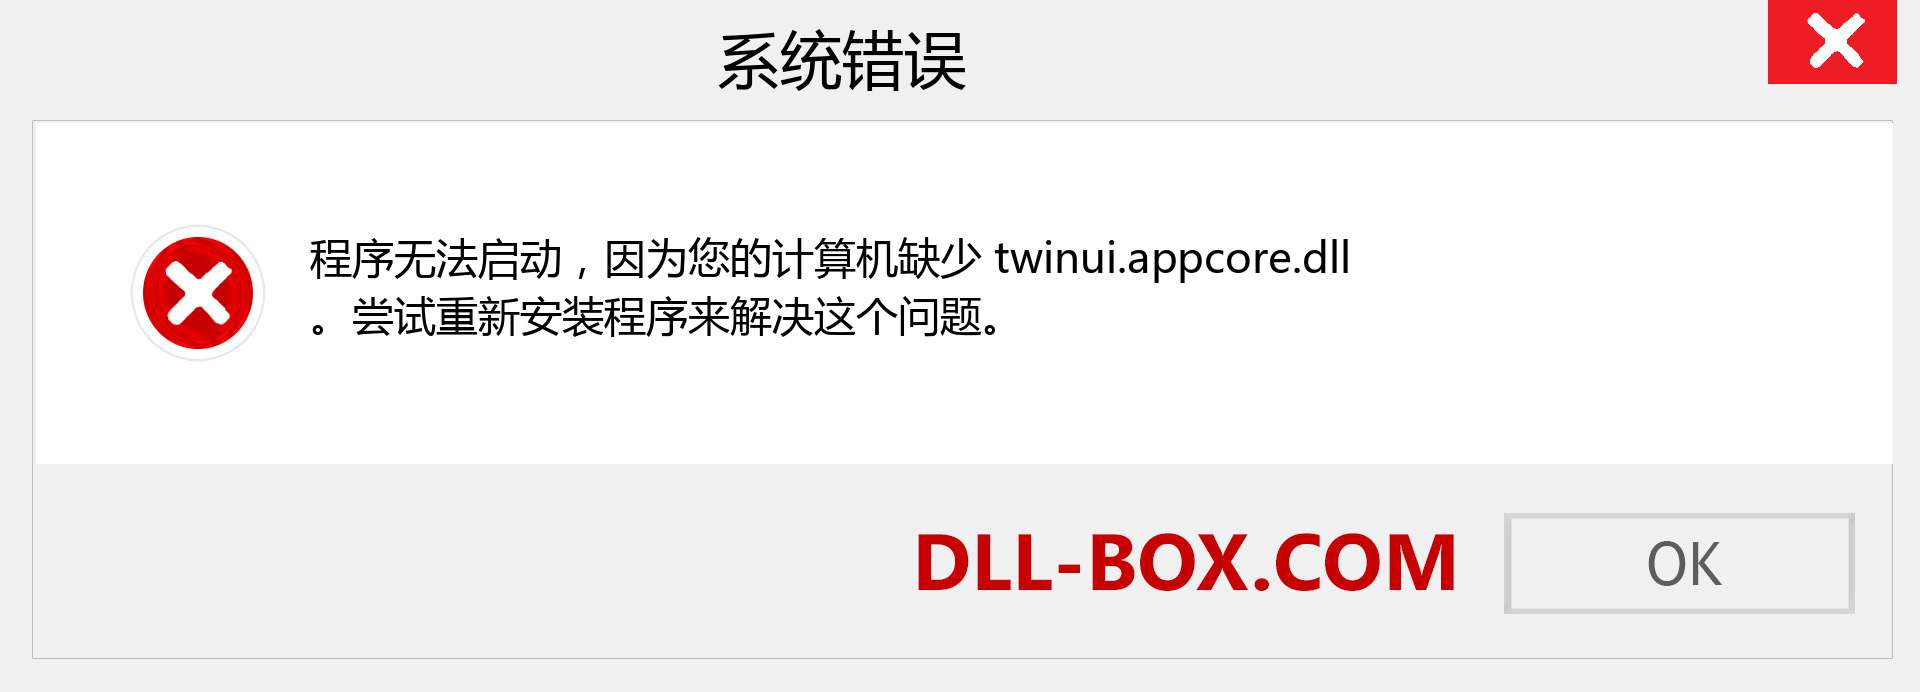 twinui.appcore.dll 文件丢失？。 适用于 Windows 7、8、10 的下载 - 修复 Windows、照片、图像上的 twinui.appcore dll 丢失错误